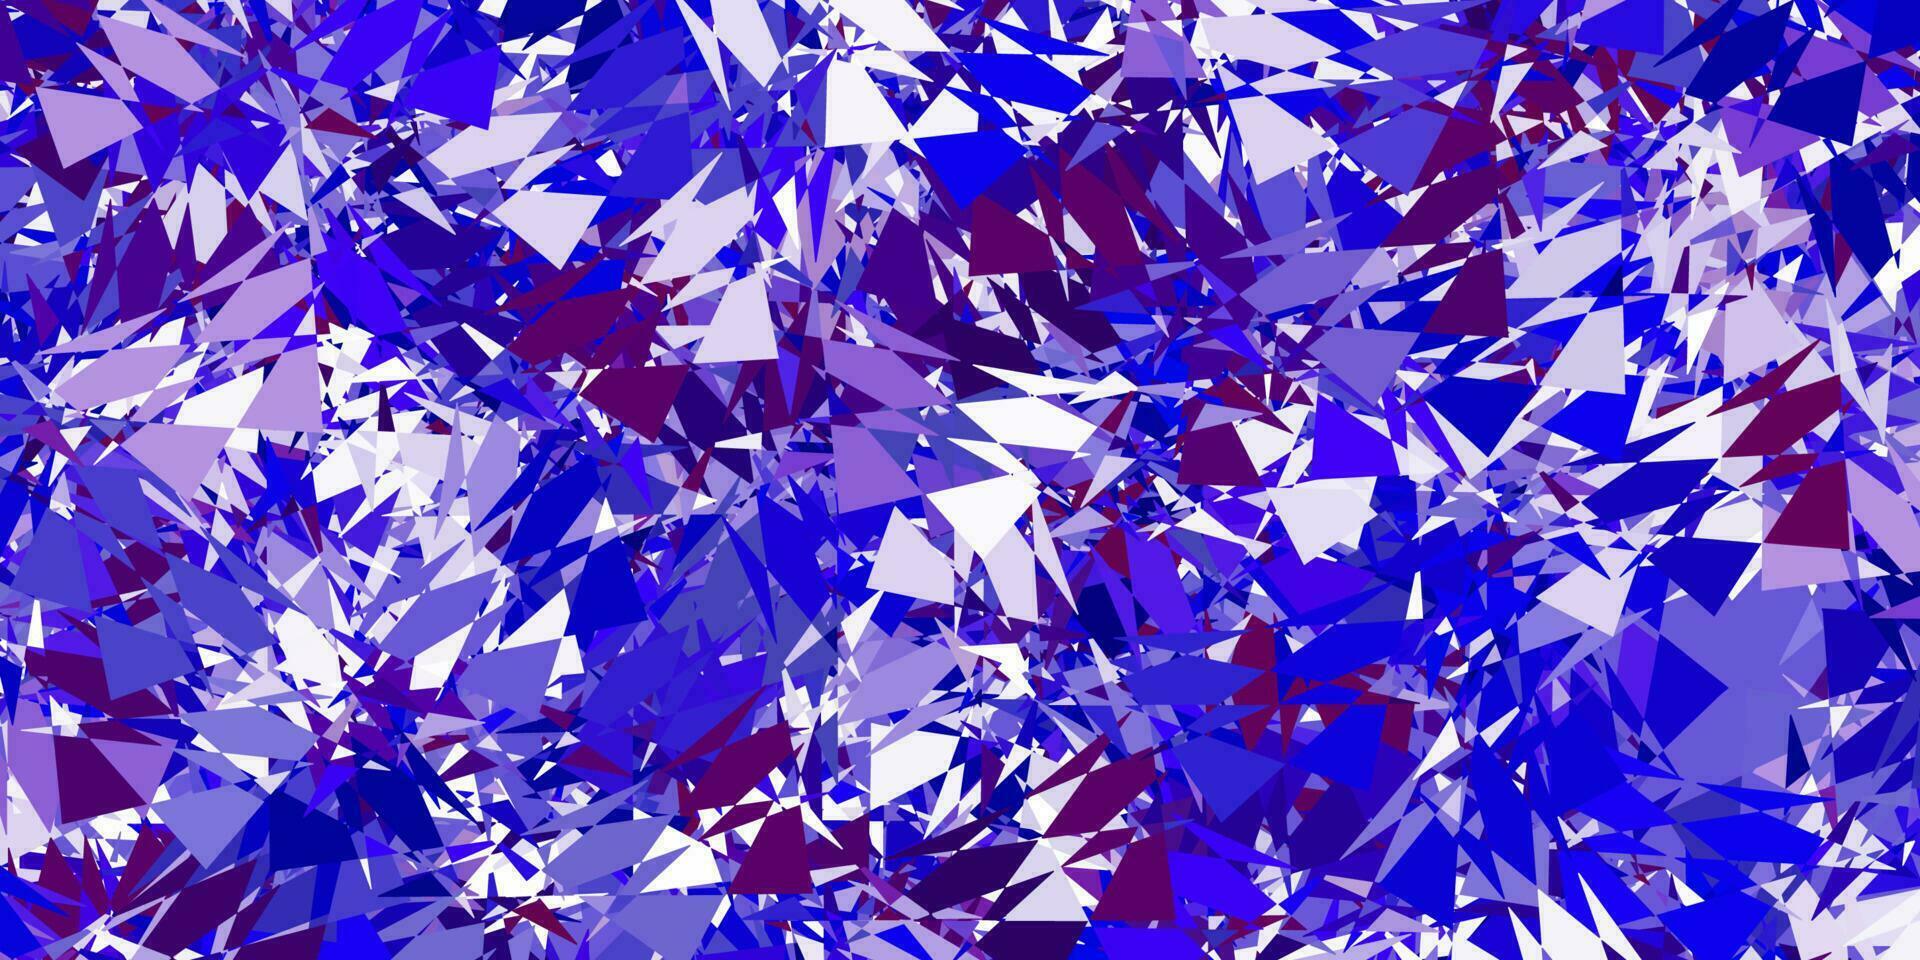 texture de vecteur bleu clair, rouge avec des triangles aléatoires.